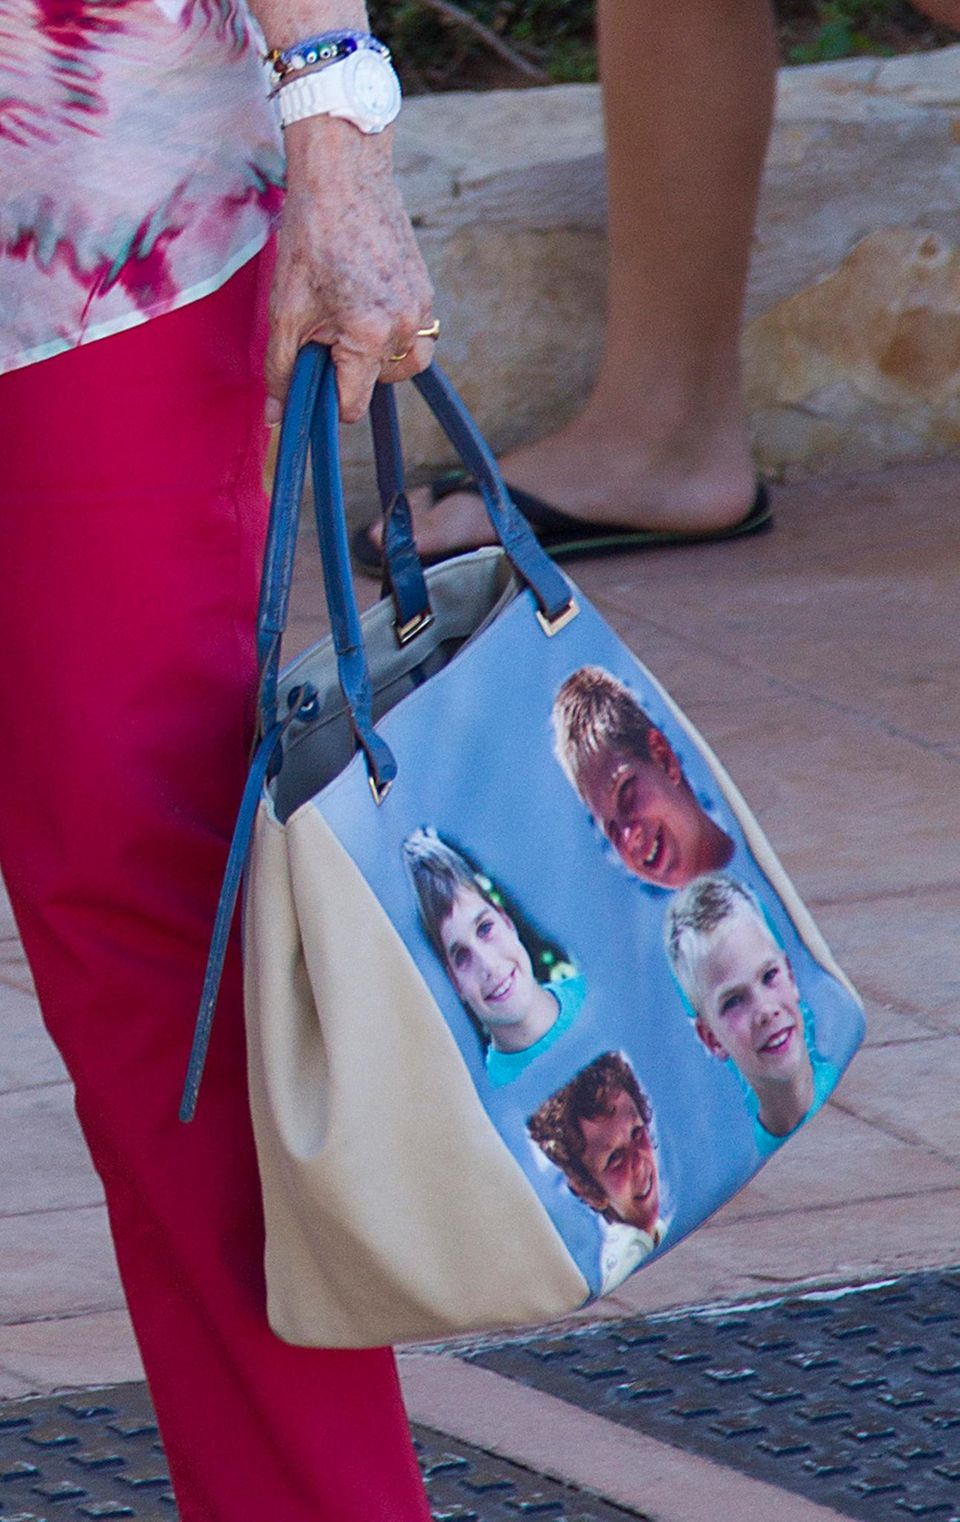 Der genau Blick auf die Tasche verrät es: Königin Sofia hat ihre Enkelkinder dabei.